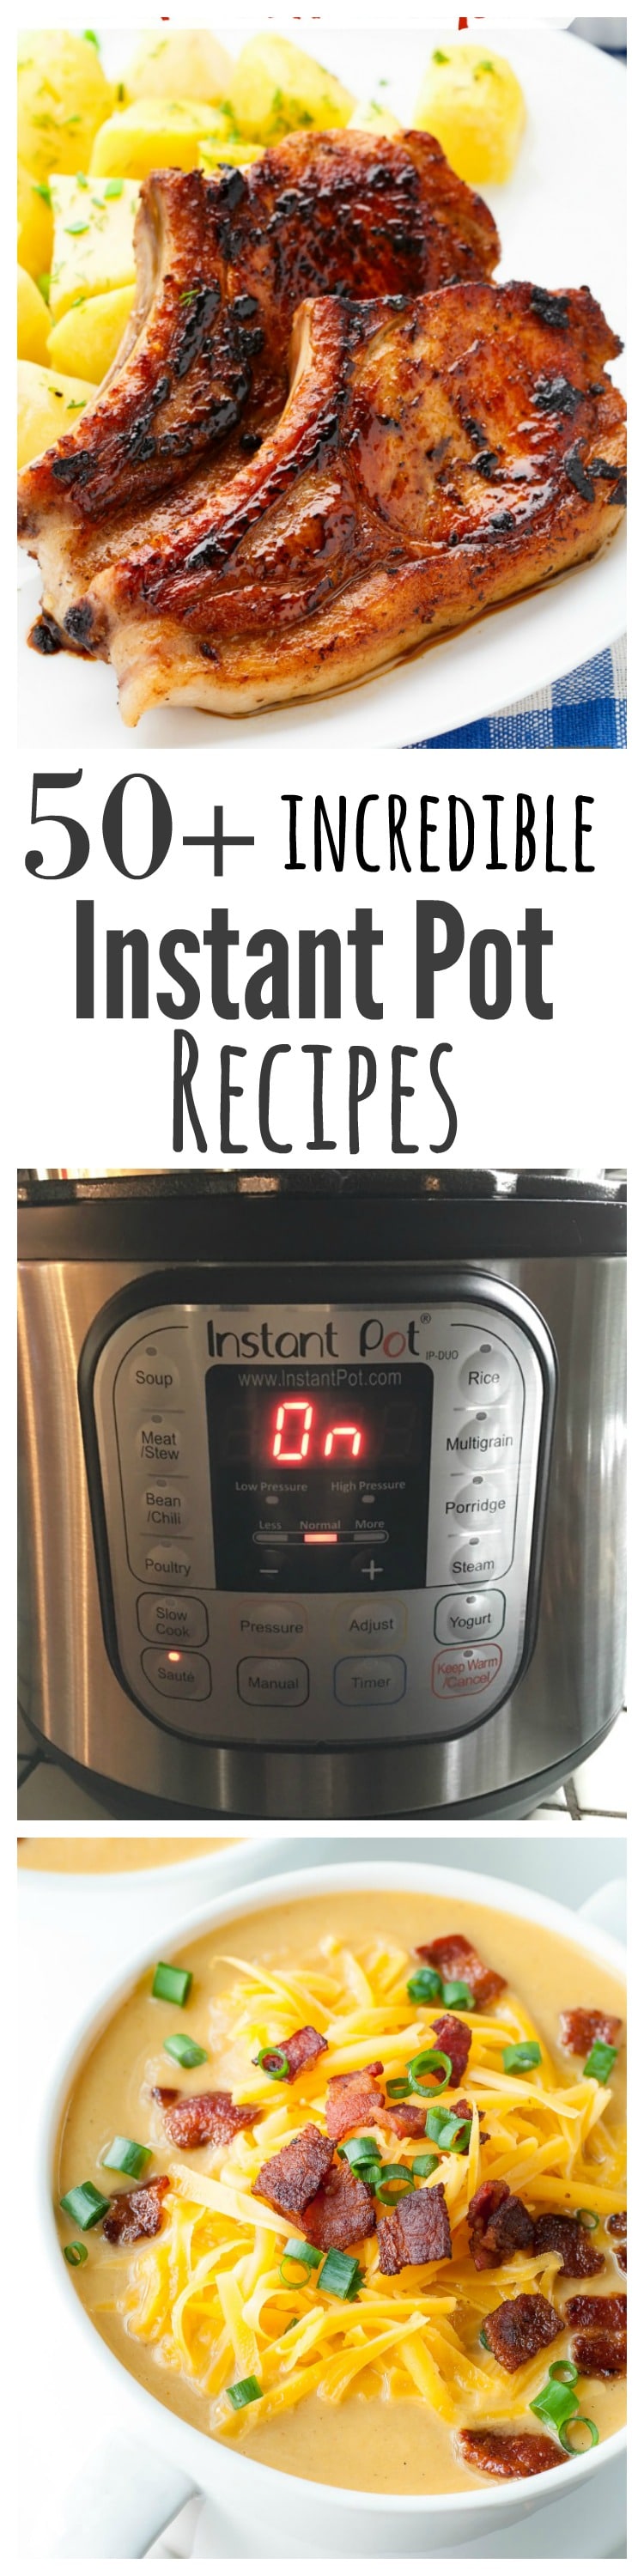 Incredible Instant Pot Recipes